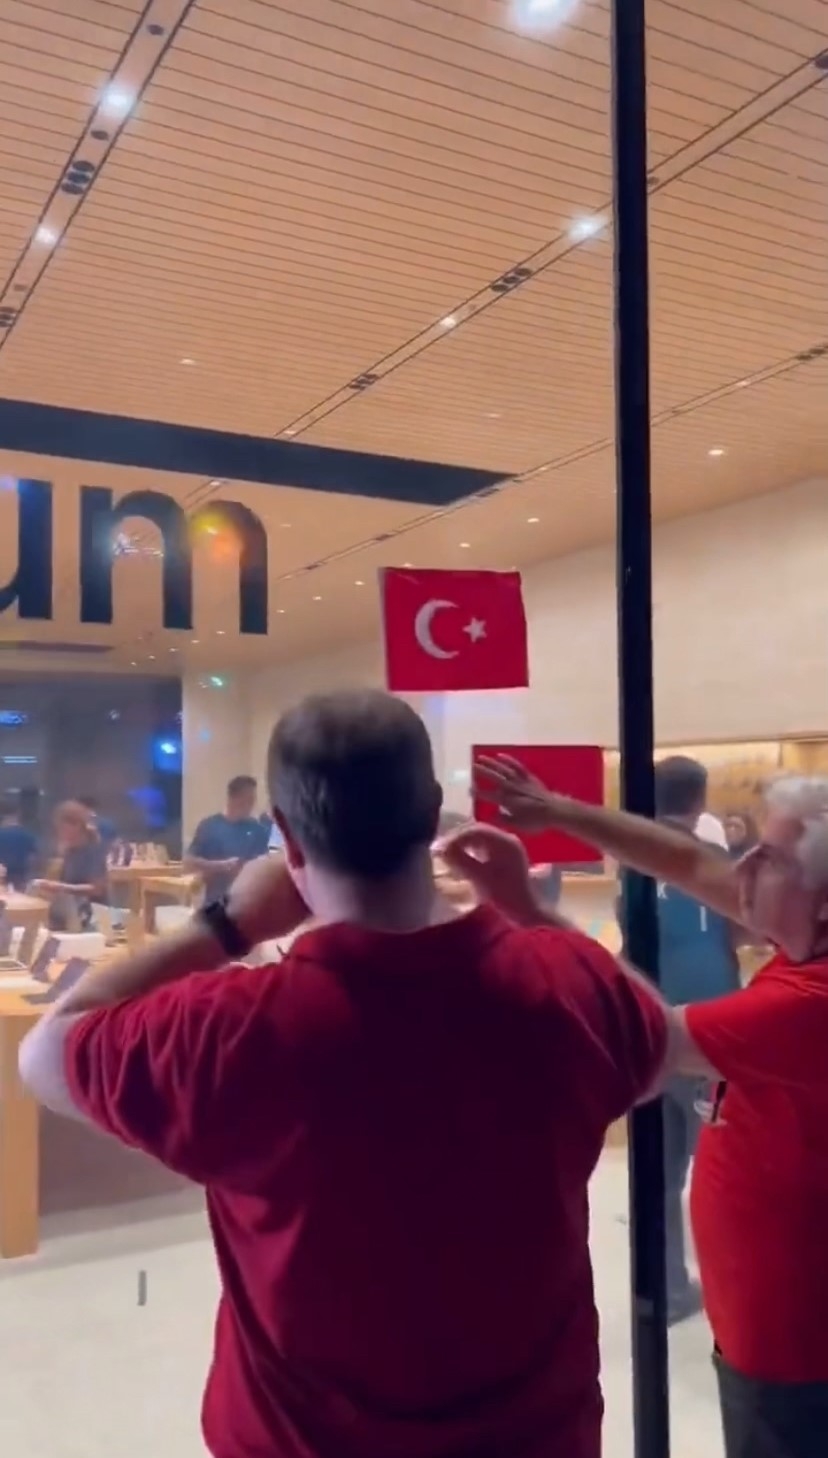 Kadıköy’de Apple mağazası Türk bayrağı asmayınca vatandaşlar astı
